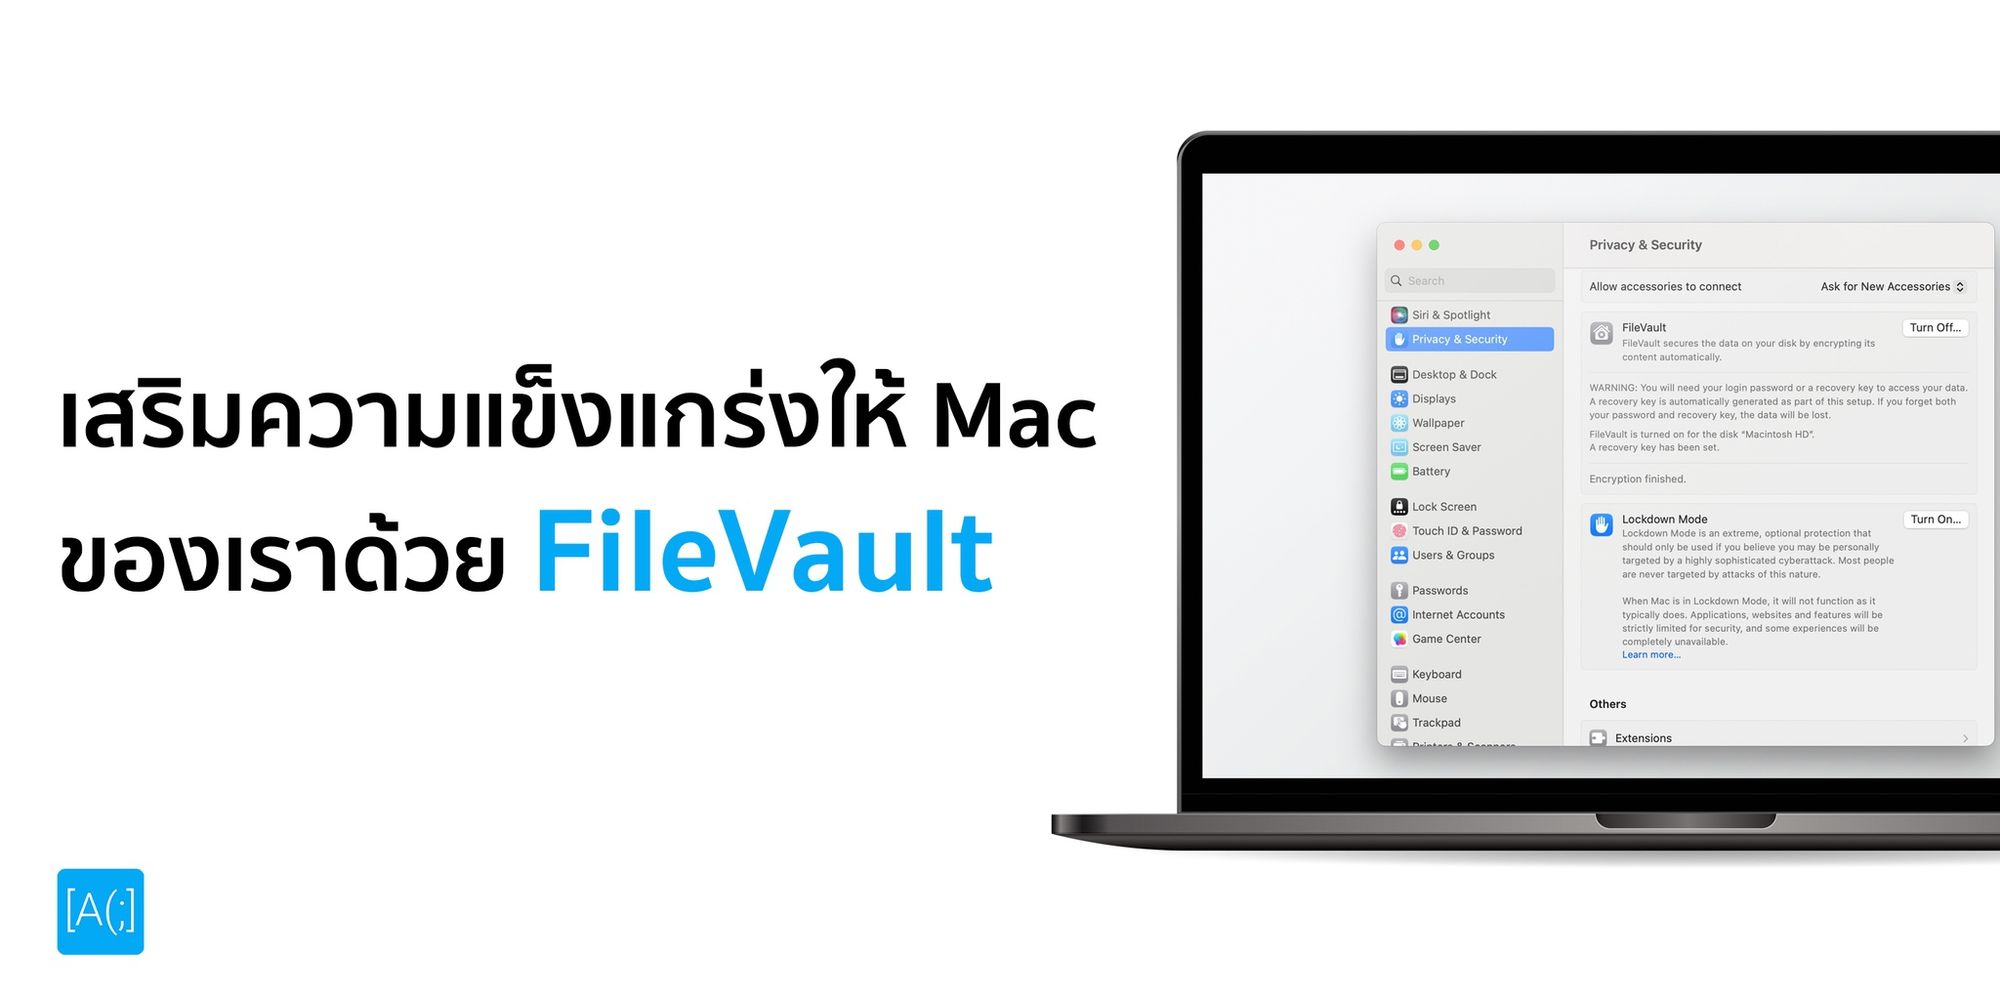 เสริมความแข็งแกร่งให้ Mac ของเราด้วย FileVault